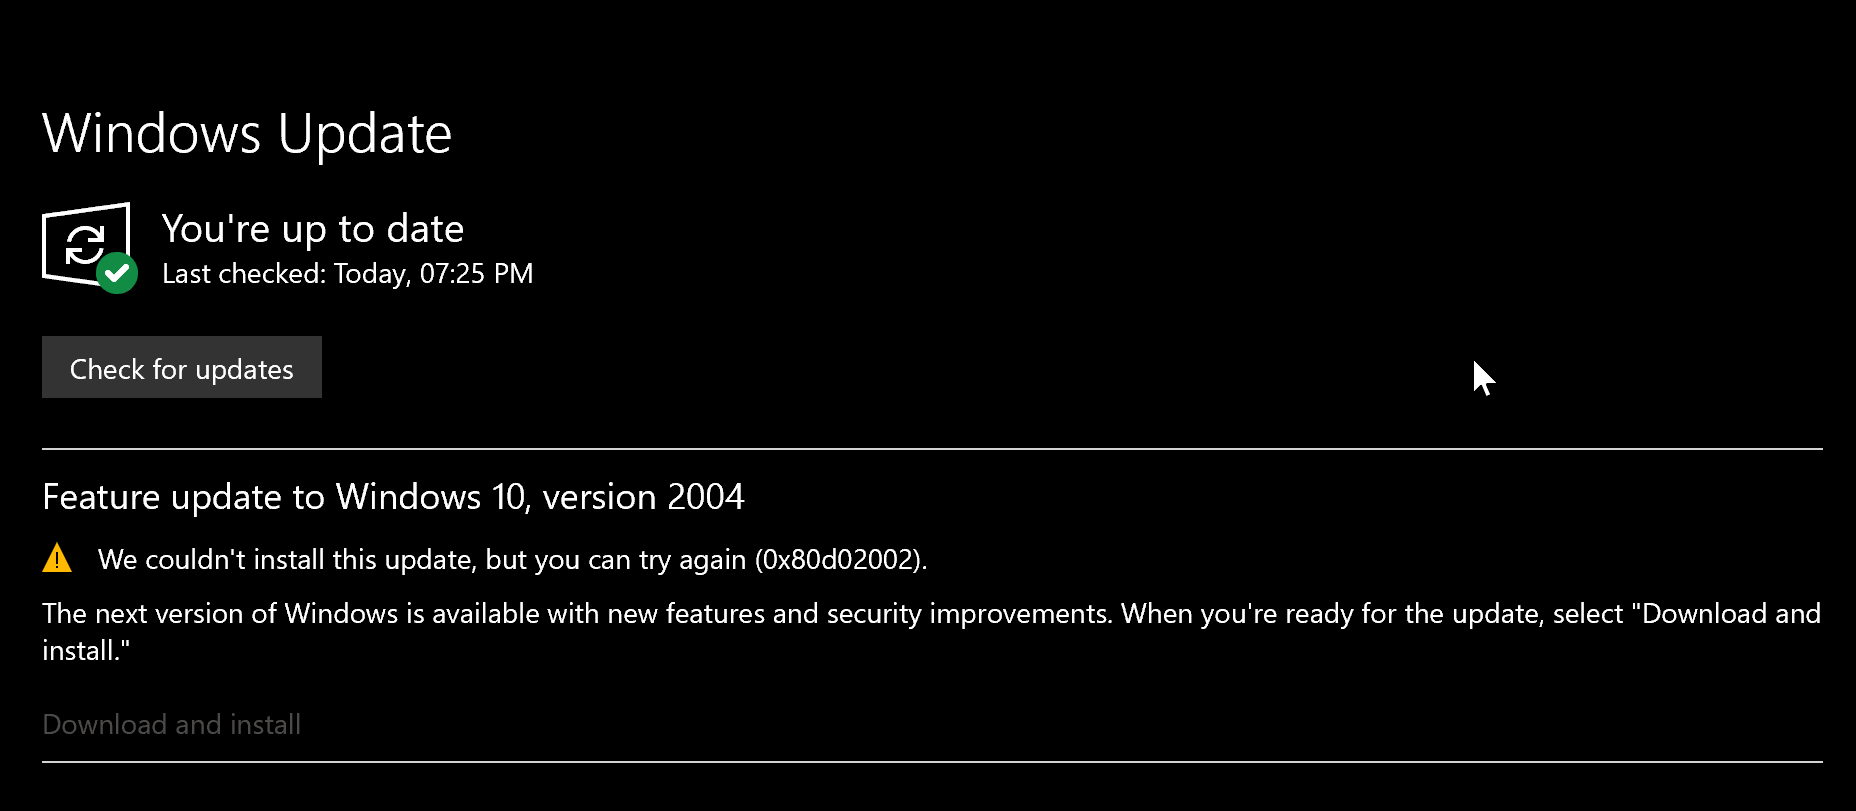 Failing Feature update to Windows 10, version 2004 1e7a8180-266f-40c1-b8e8-12a62dfa3865?upload=true.png